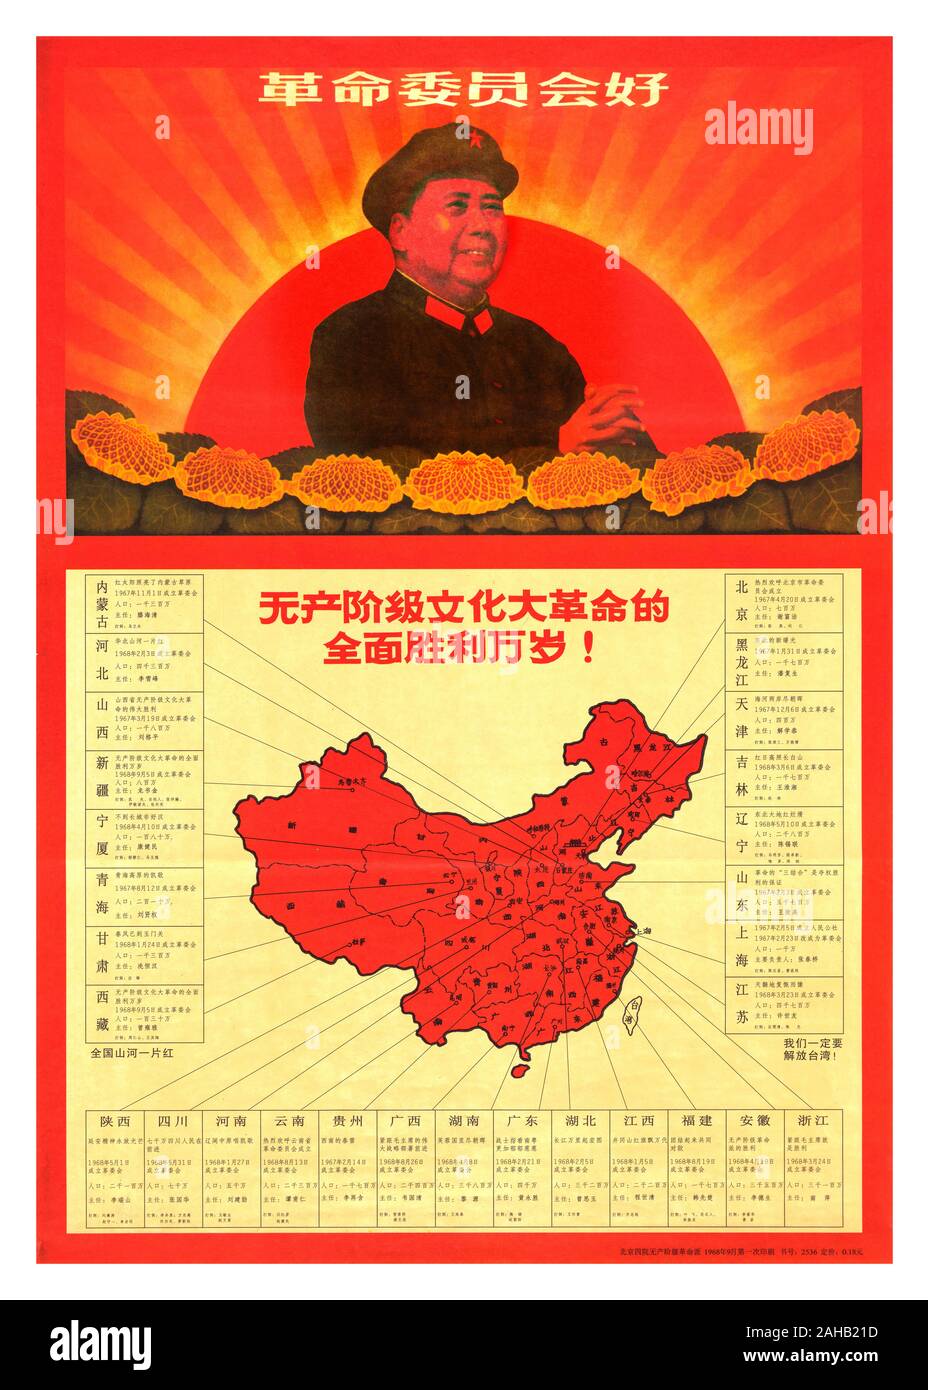 Vintage anni sessanta Mao Poster mappa celebra il momento in cui il 5 settembre 1968, quando la massa 'Seize Power' movimento della Rivoluzione Culturale riuscì a costringere la sostituzione di governi riconosciuti da "comitati rivoluzionari' negli ultimi due della Cina le 29 regioni amministrative, le province della Cina in Tibet e nello Xinjiang. In 'gennaio Storm' del 1967, le forze della Rivoluzione Culturale rovesciò il Shanghai Municipal Government e sostituito con un "gente comune dell'. Mao conseguente approvazione del rovesciamento iniziò un violento movimento di massa organizzazioni rivoluzionarie a 'Seize Potenza" Foto Stock